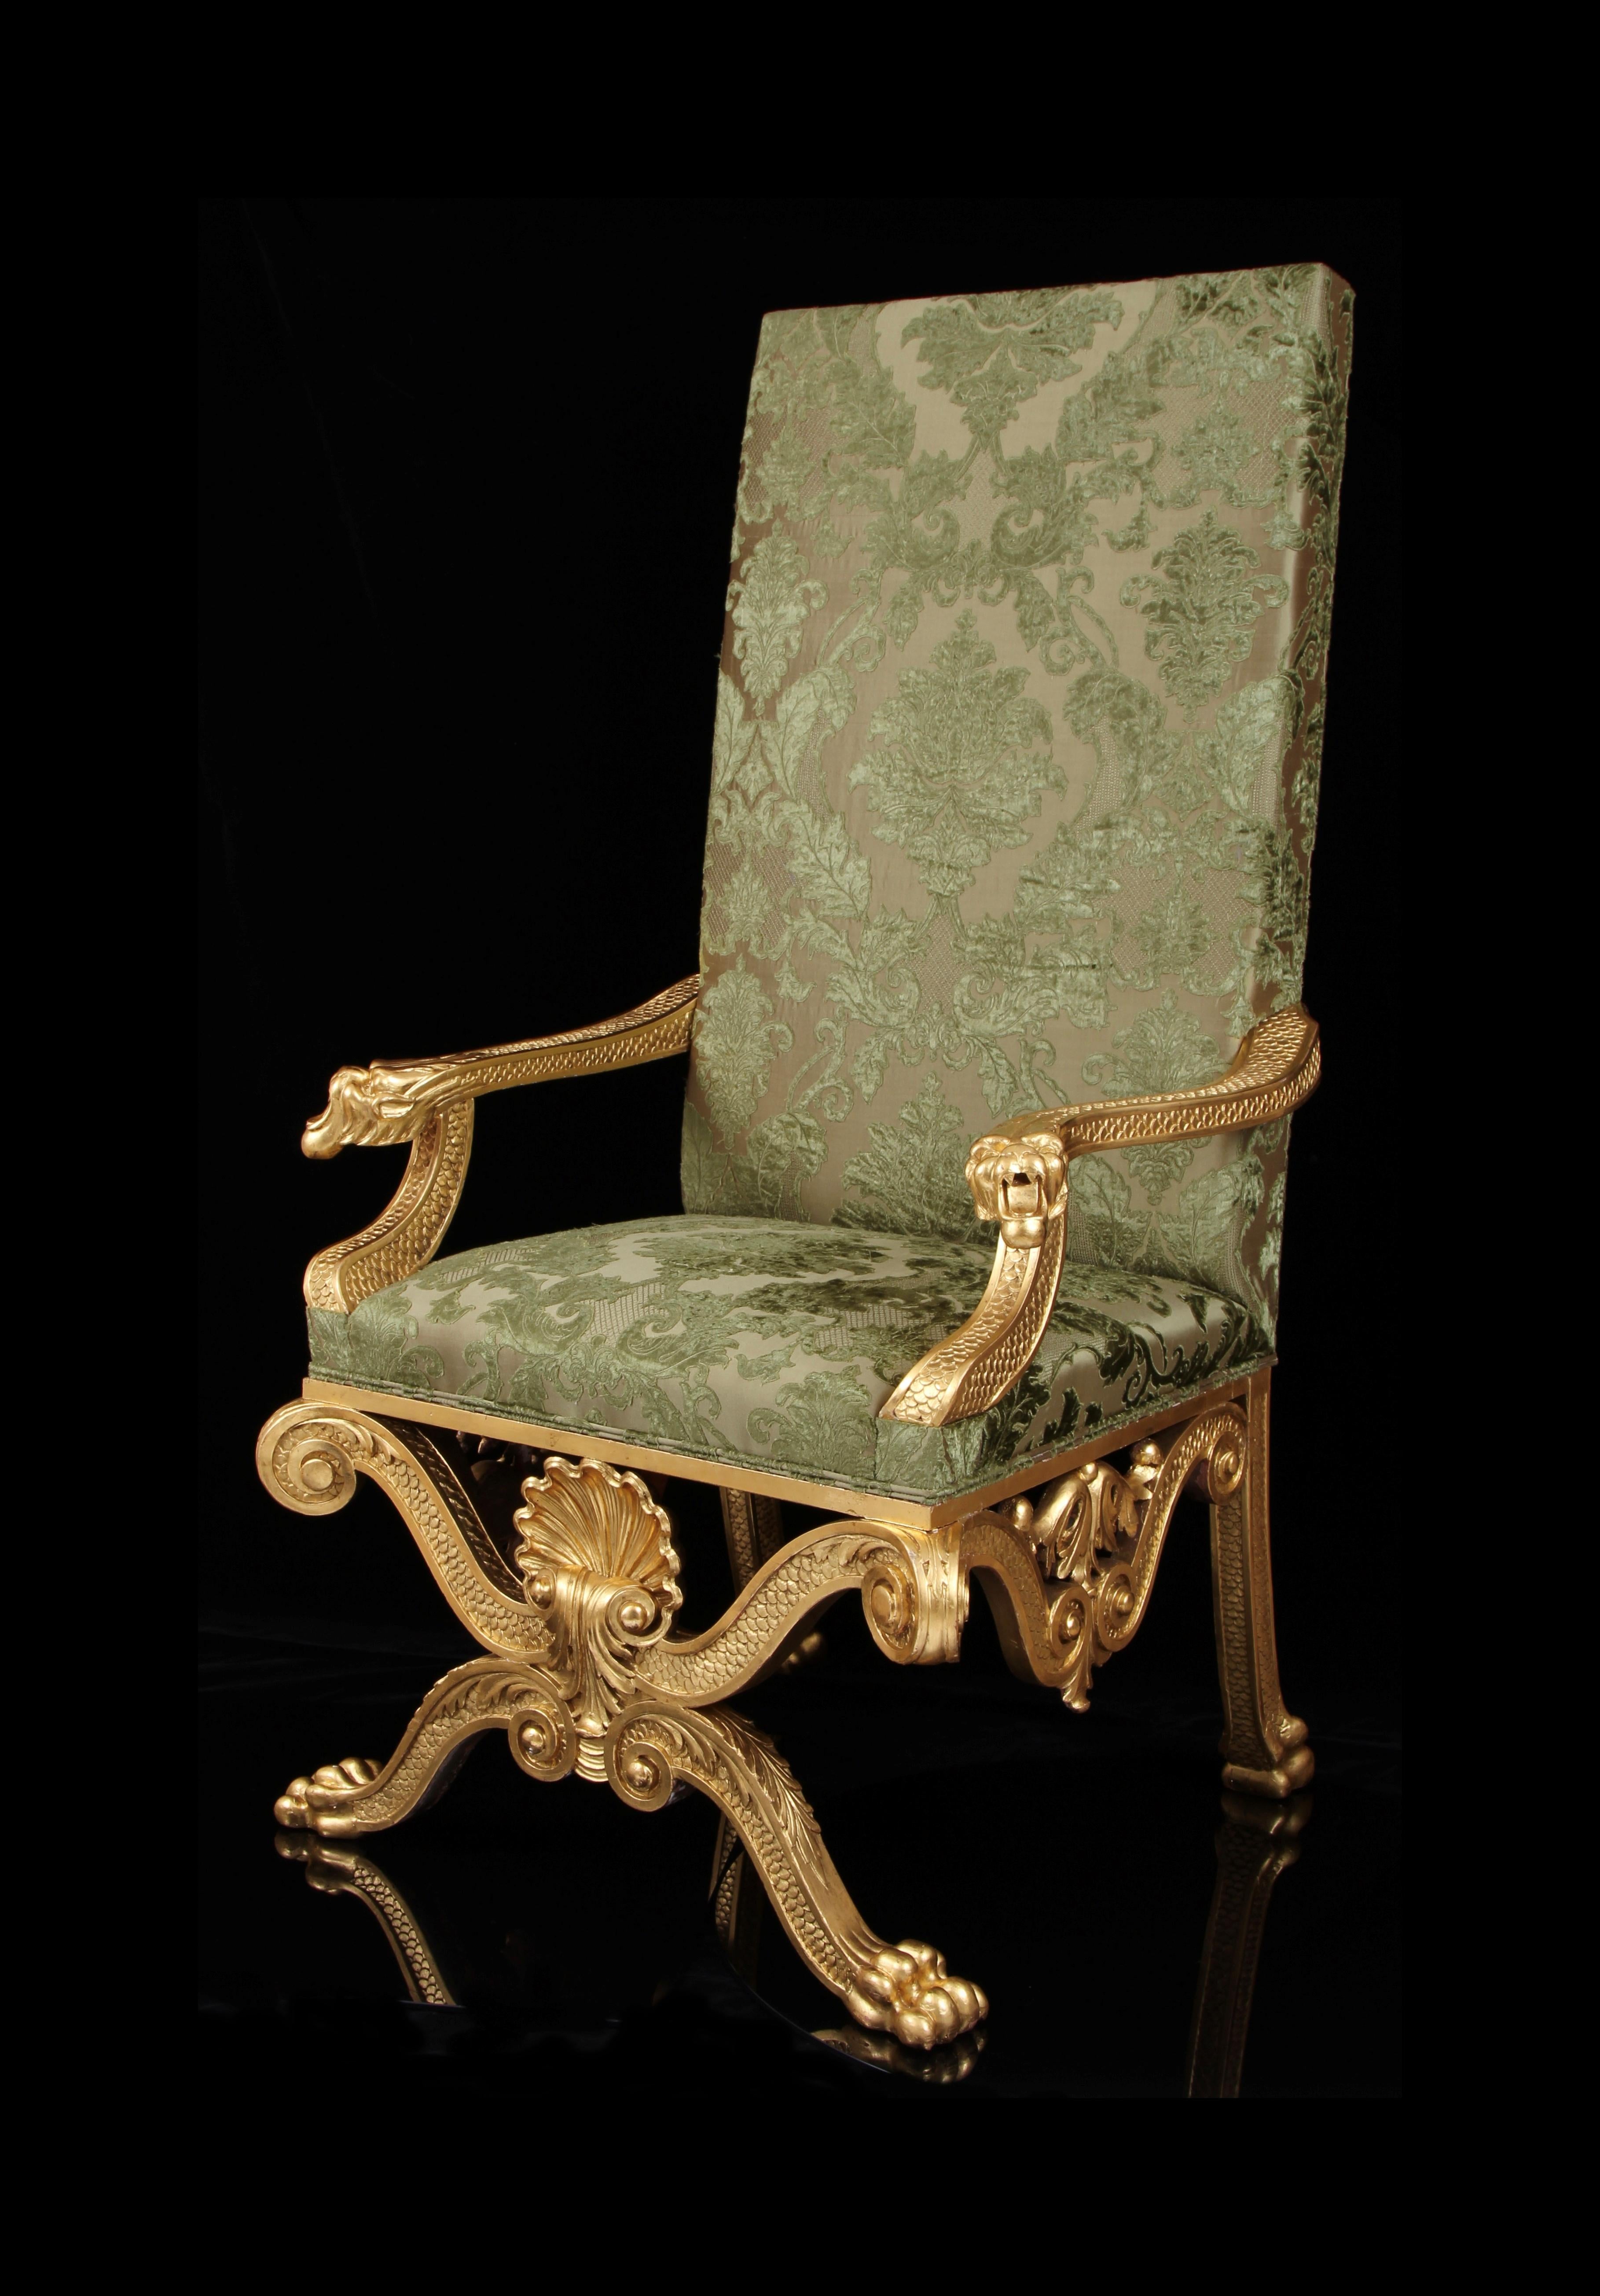 Un superbe fauteuil du 19e siècle, d'une facture exquise. 

Provenance : Château de Boughrood, Pays de Galles

Conçu par l'un des plus importants architectes du XVIIIe siècle.

Rembourré en velours de soie brodée de la plus haute qualité.

Important